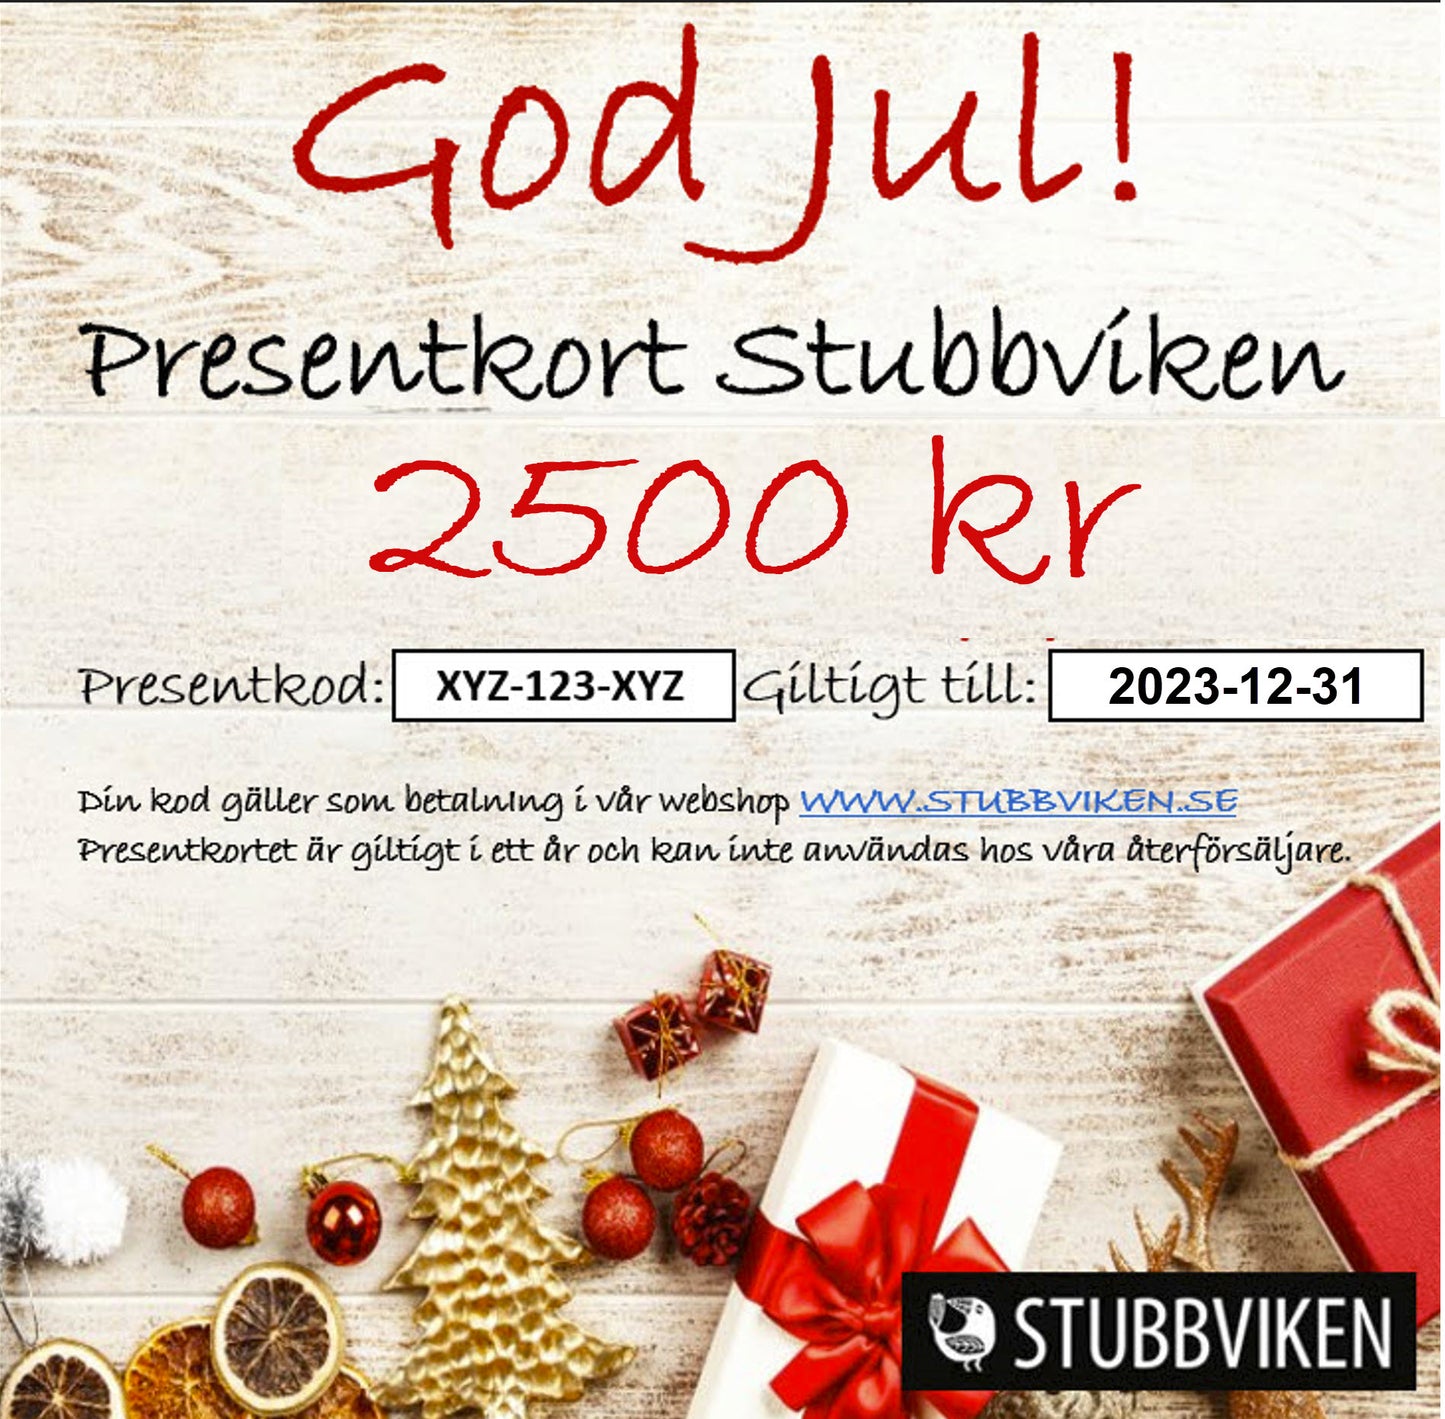 Presentkort Stubbviken - Skickas till köparens postadress